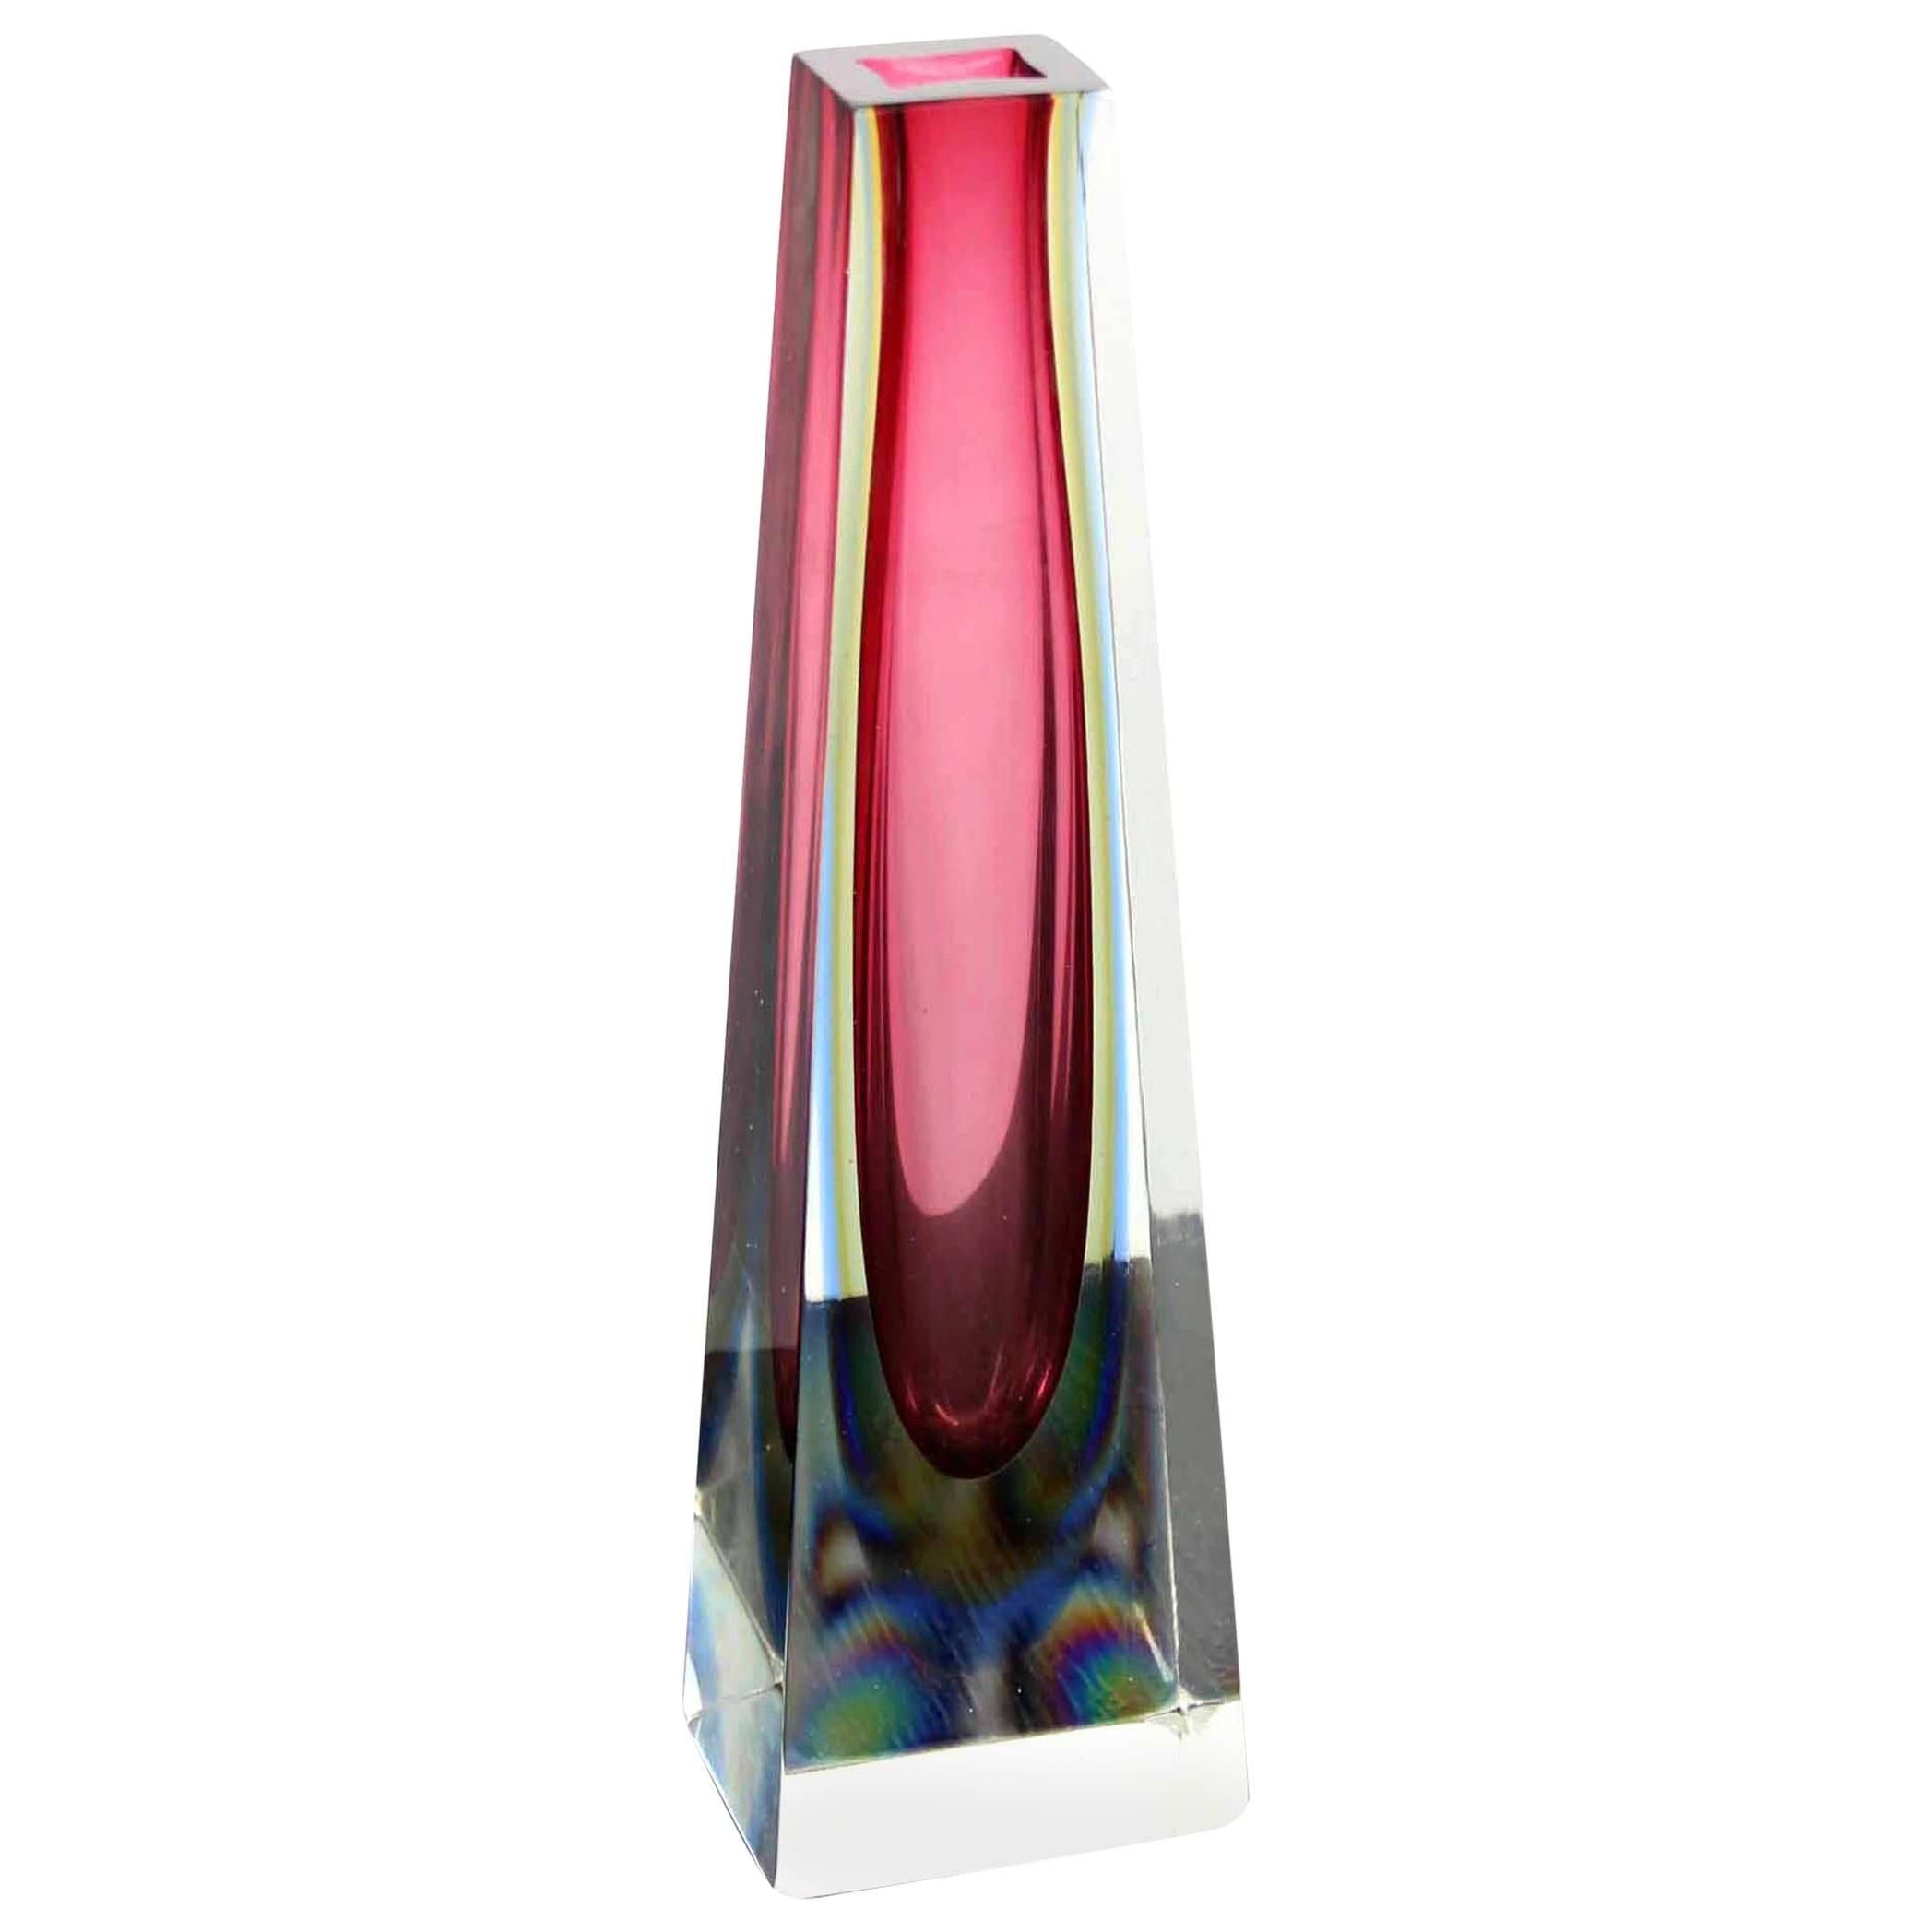 13" Modern Pyramid or Obelisk Shape thick Pink Glass Vase